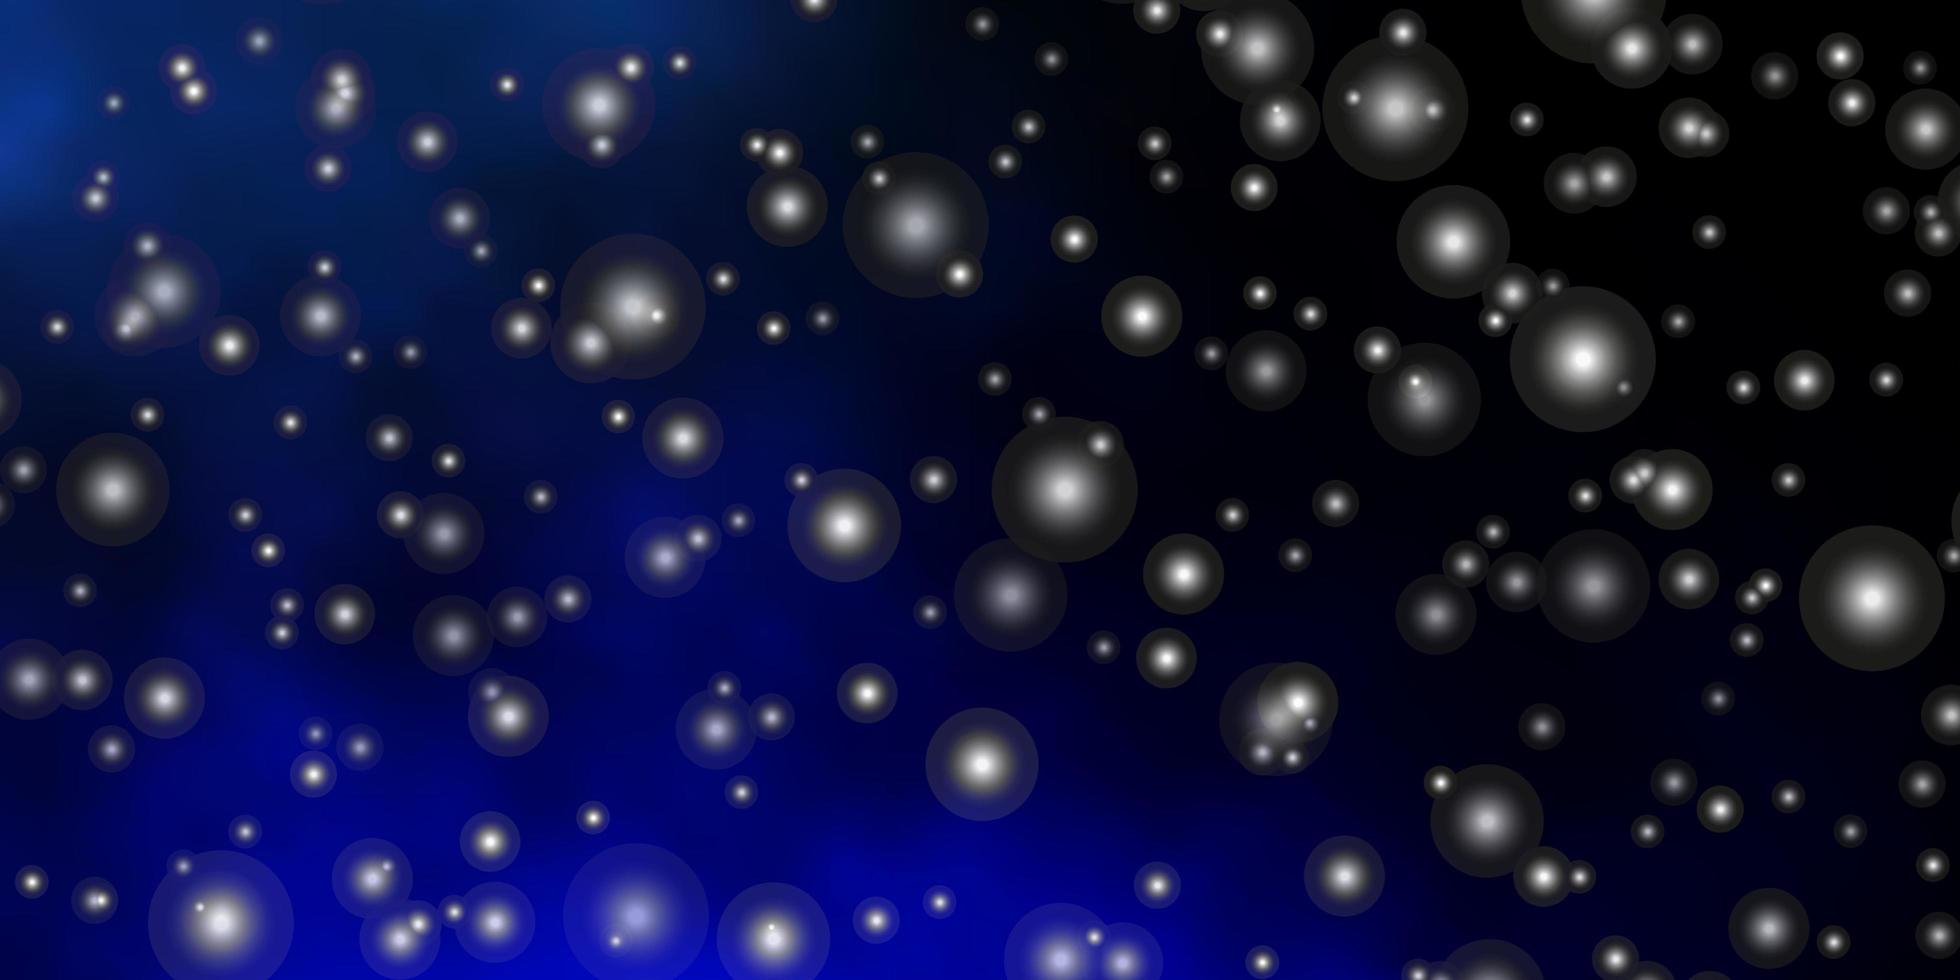 sfondo vettoriale blu scuro con stelle colorate illustrazione decorativa con stelle su modello astratto modello per pagine di destinazione di siti web